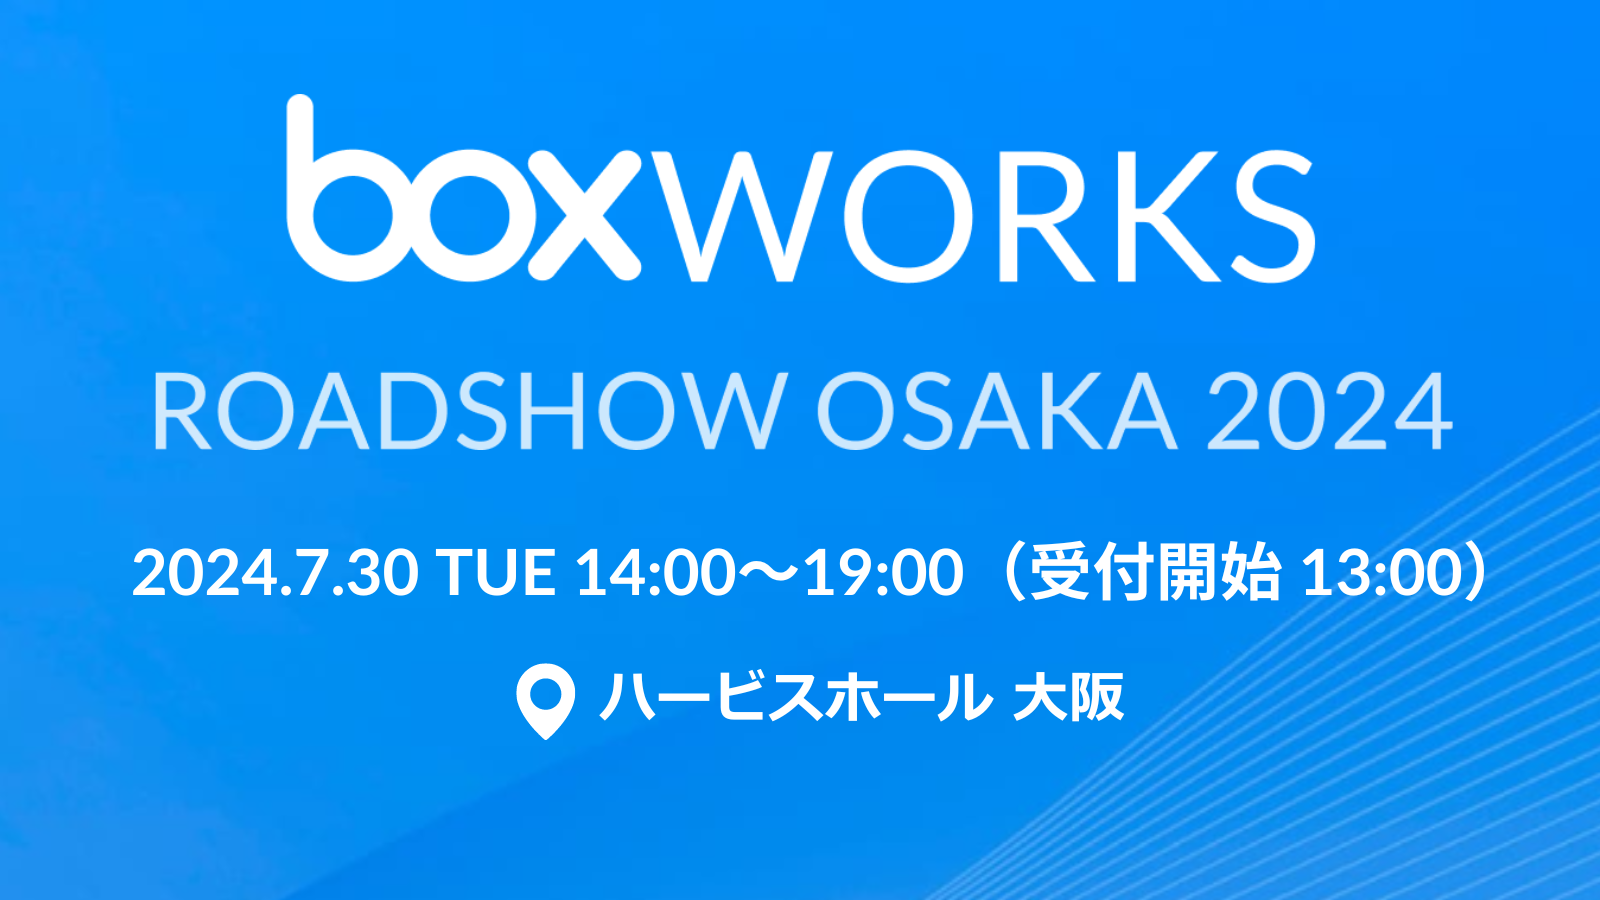 BoxWorks ROADSHOW OSAKA 2024